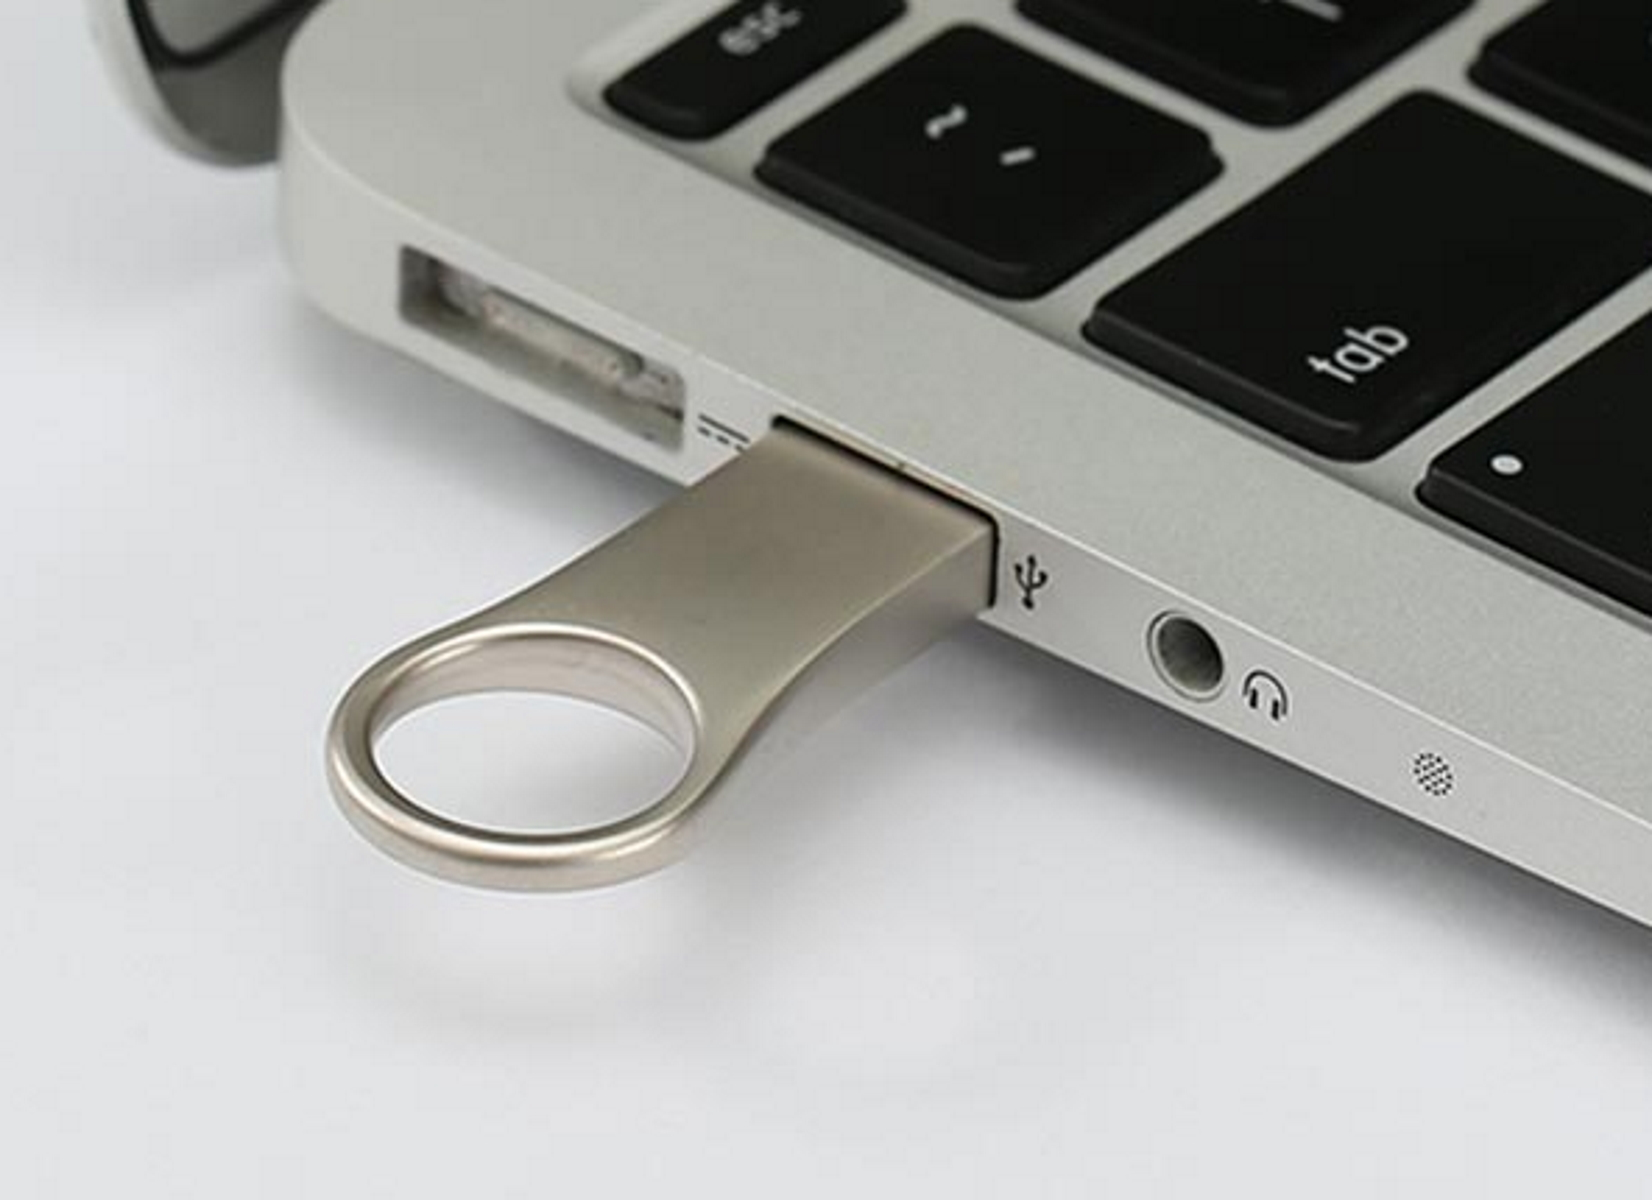 USB GERMANY GB) 128 Metall ® USB-Stick U66 (Silber